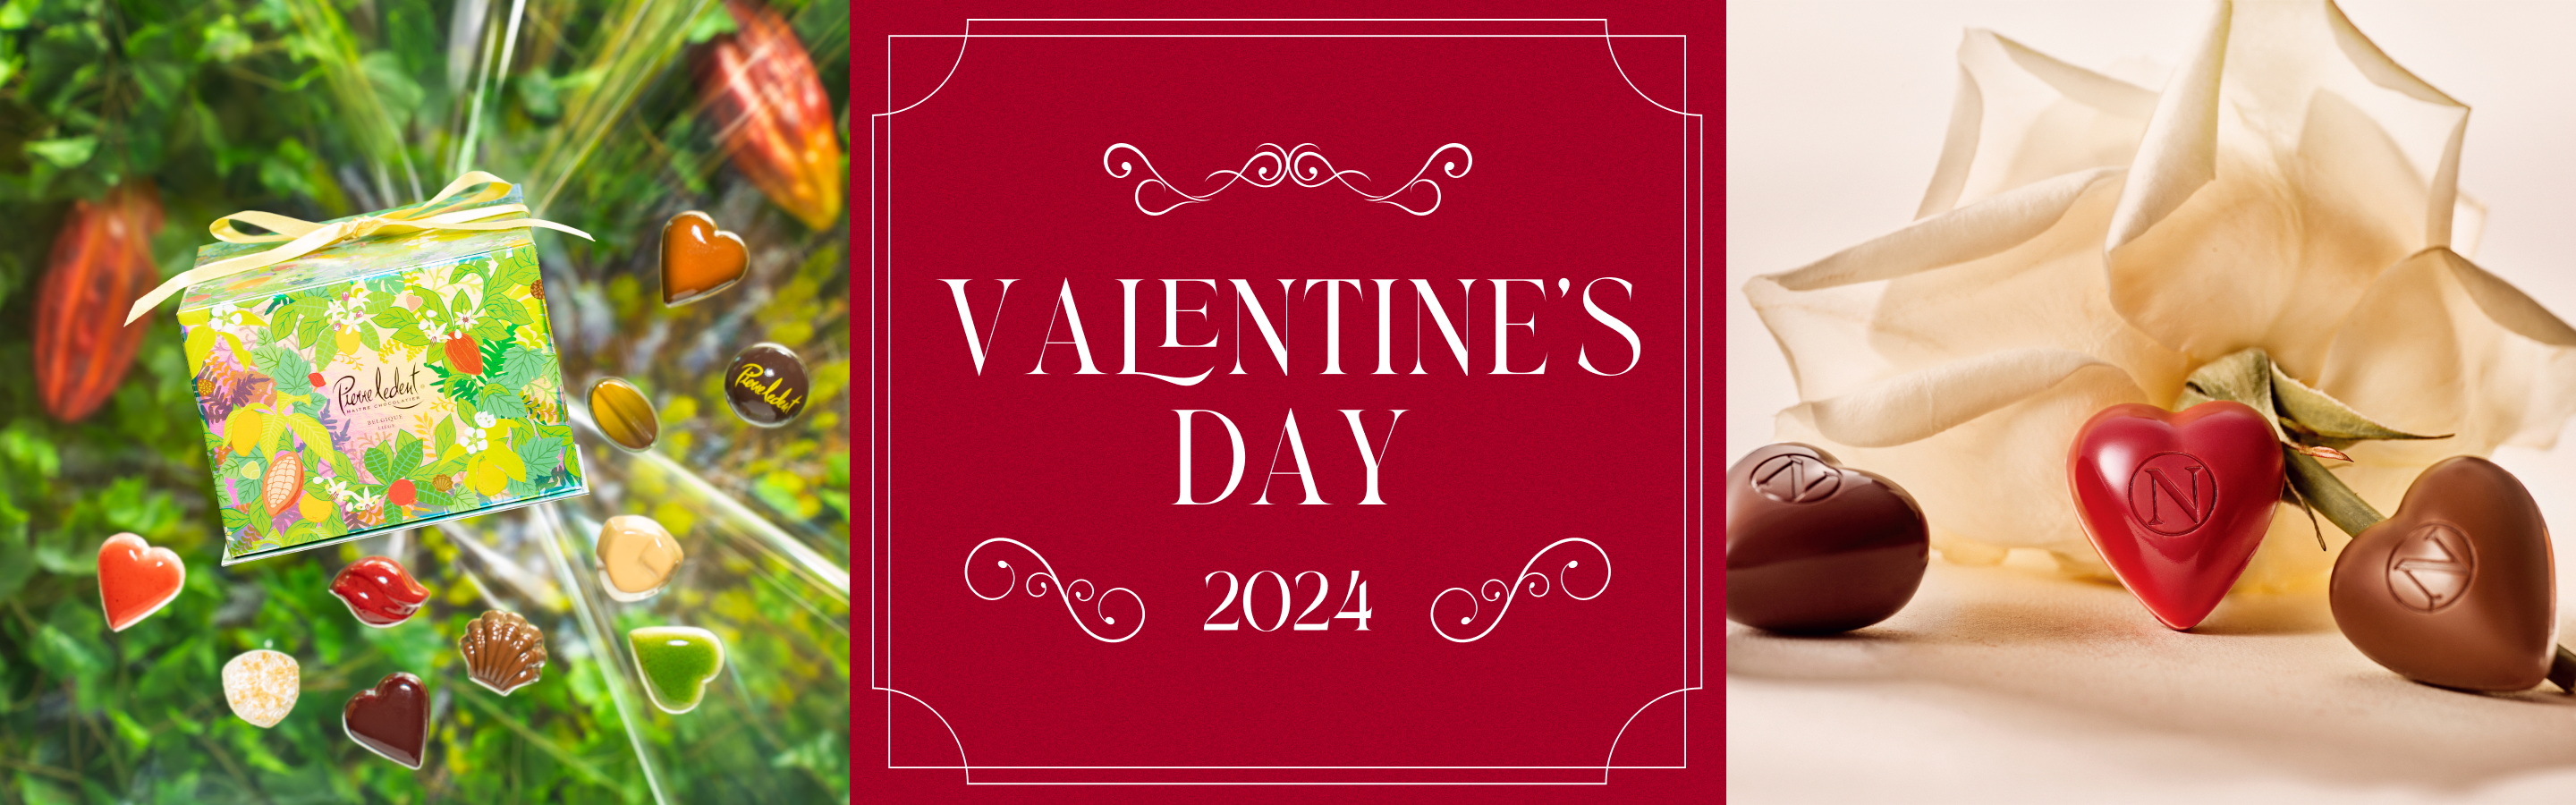 Valentine's Day 2024